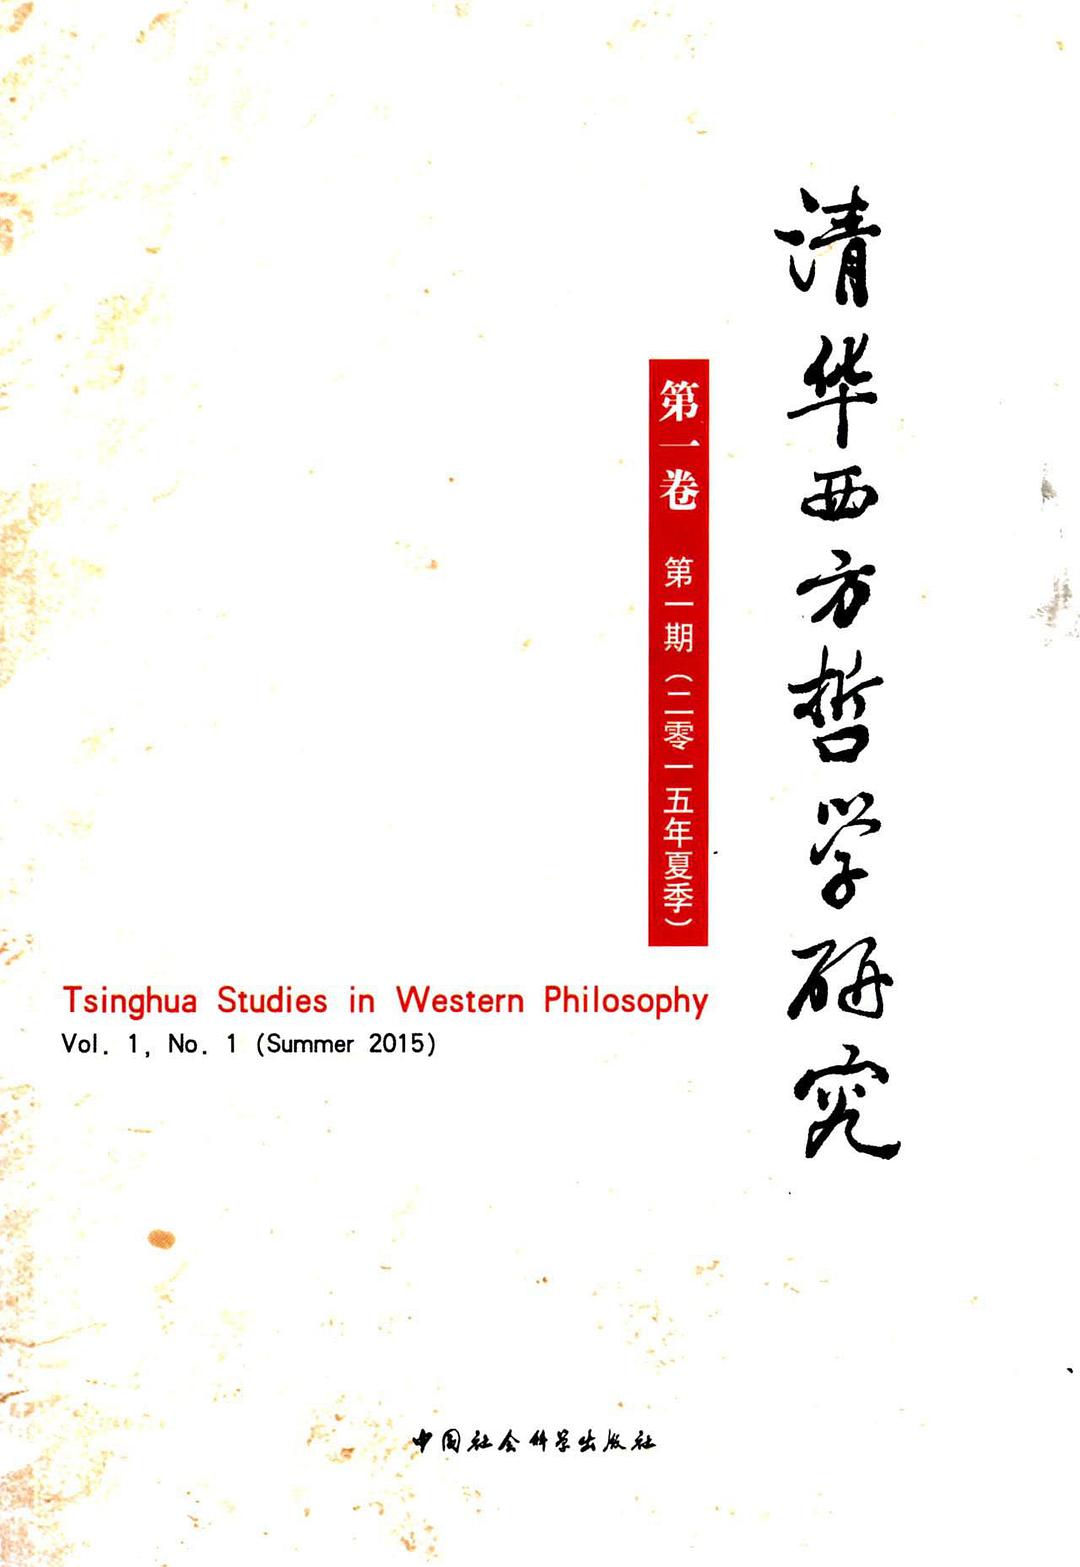 清华西方哲学研究 第一卷 第一期（二零一五年夏季） Vol.1, No.1 (Summer 2015)